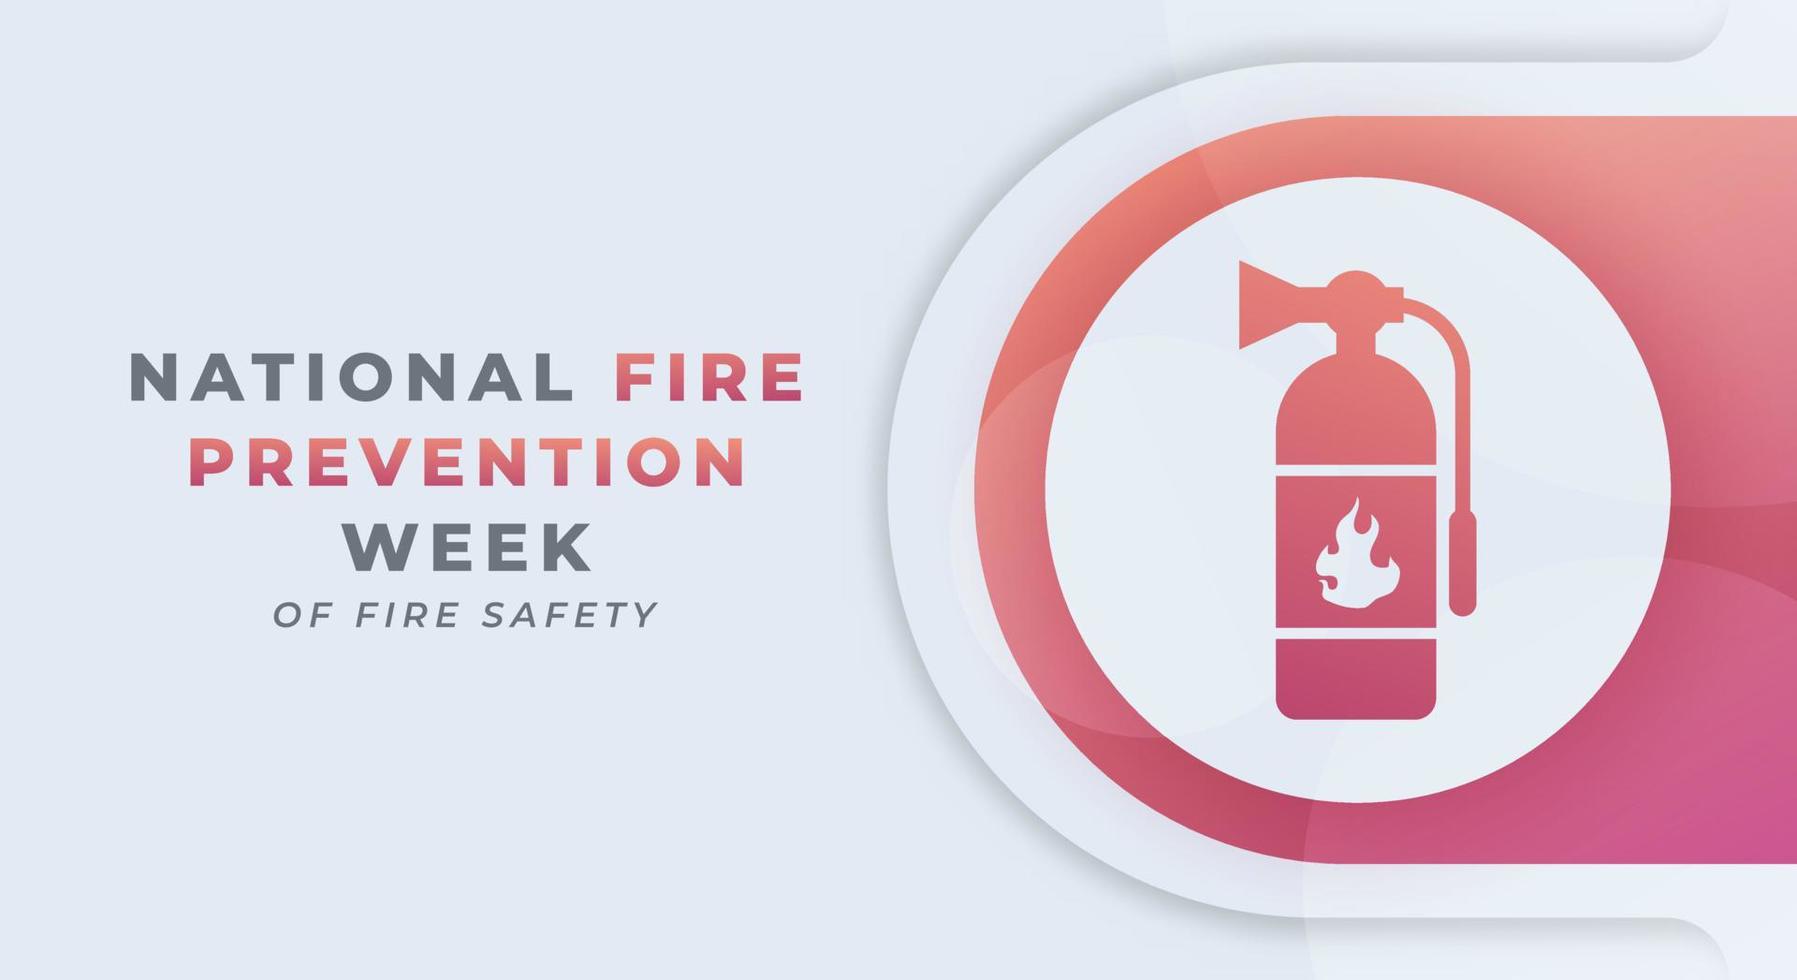 contento nacional fuego prevención semana celebracion vector diseño ilustración para fondo, póster, bandera, publicidad, saludo tarjeta